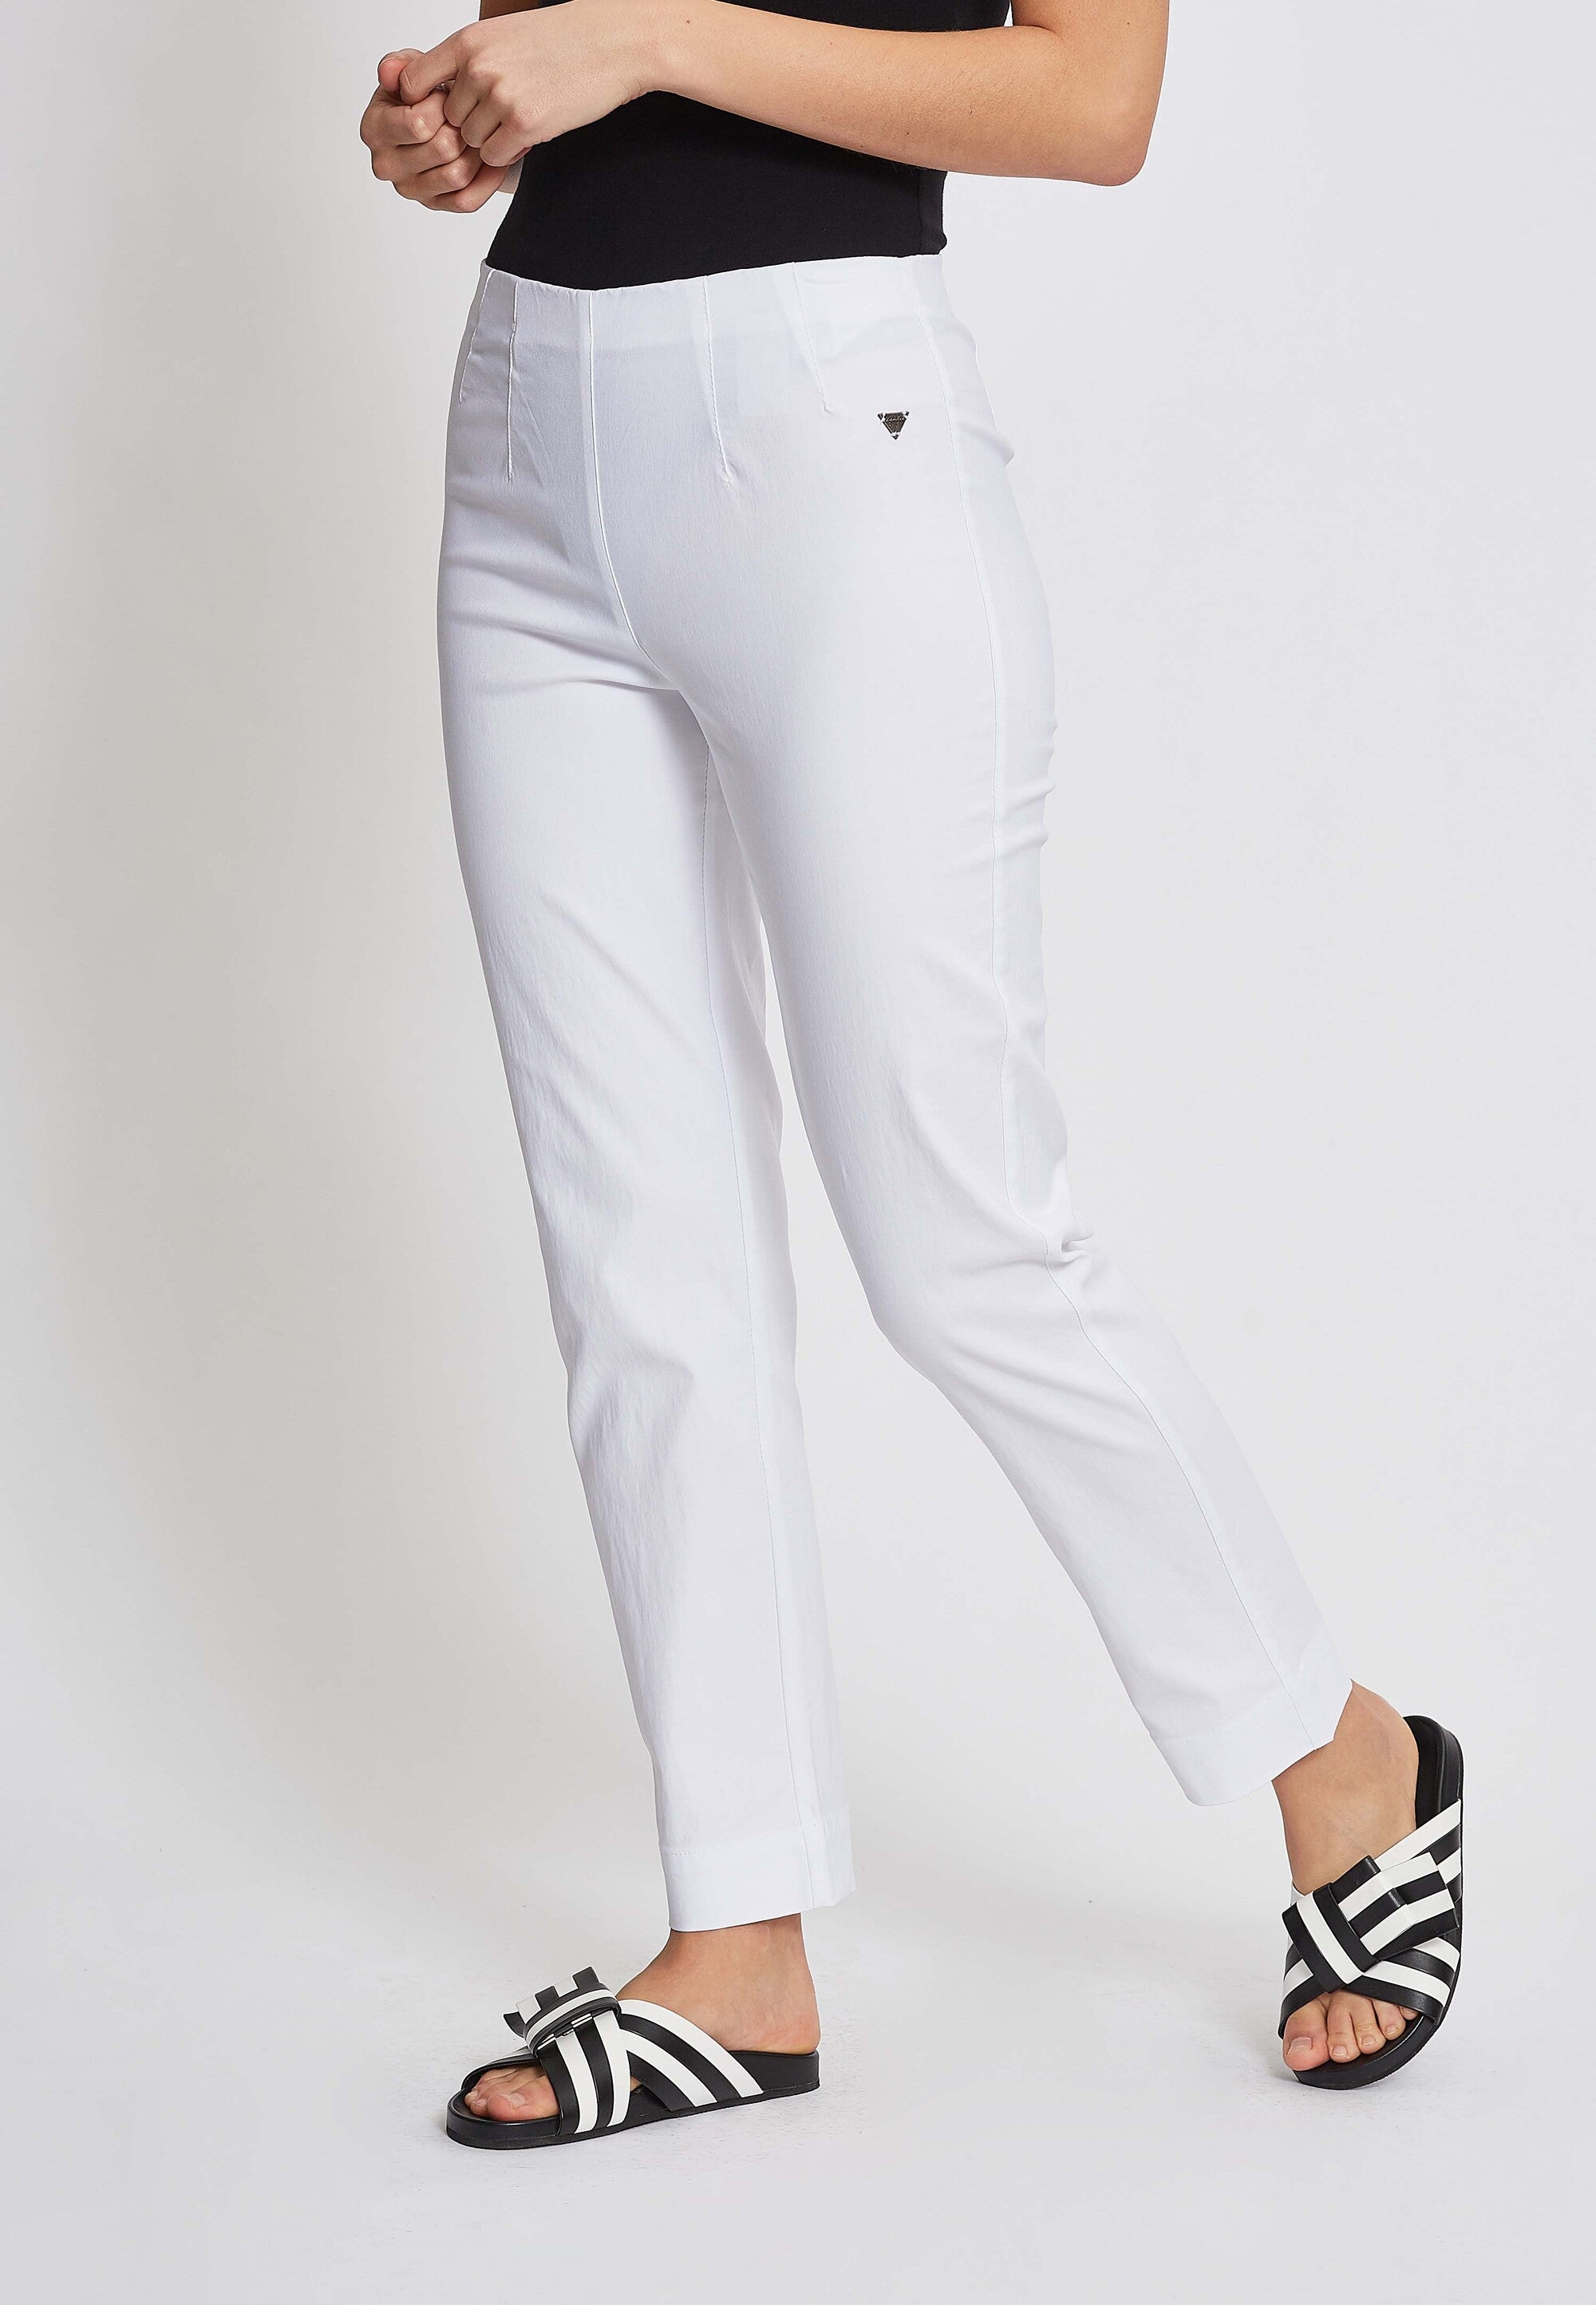 LAURIE  Betty Regular - Short Length Trousers REGULAR 10970 White